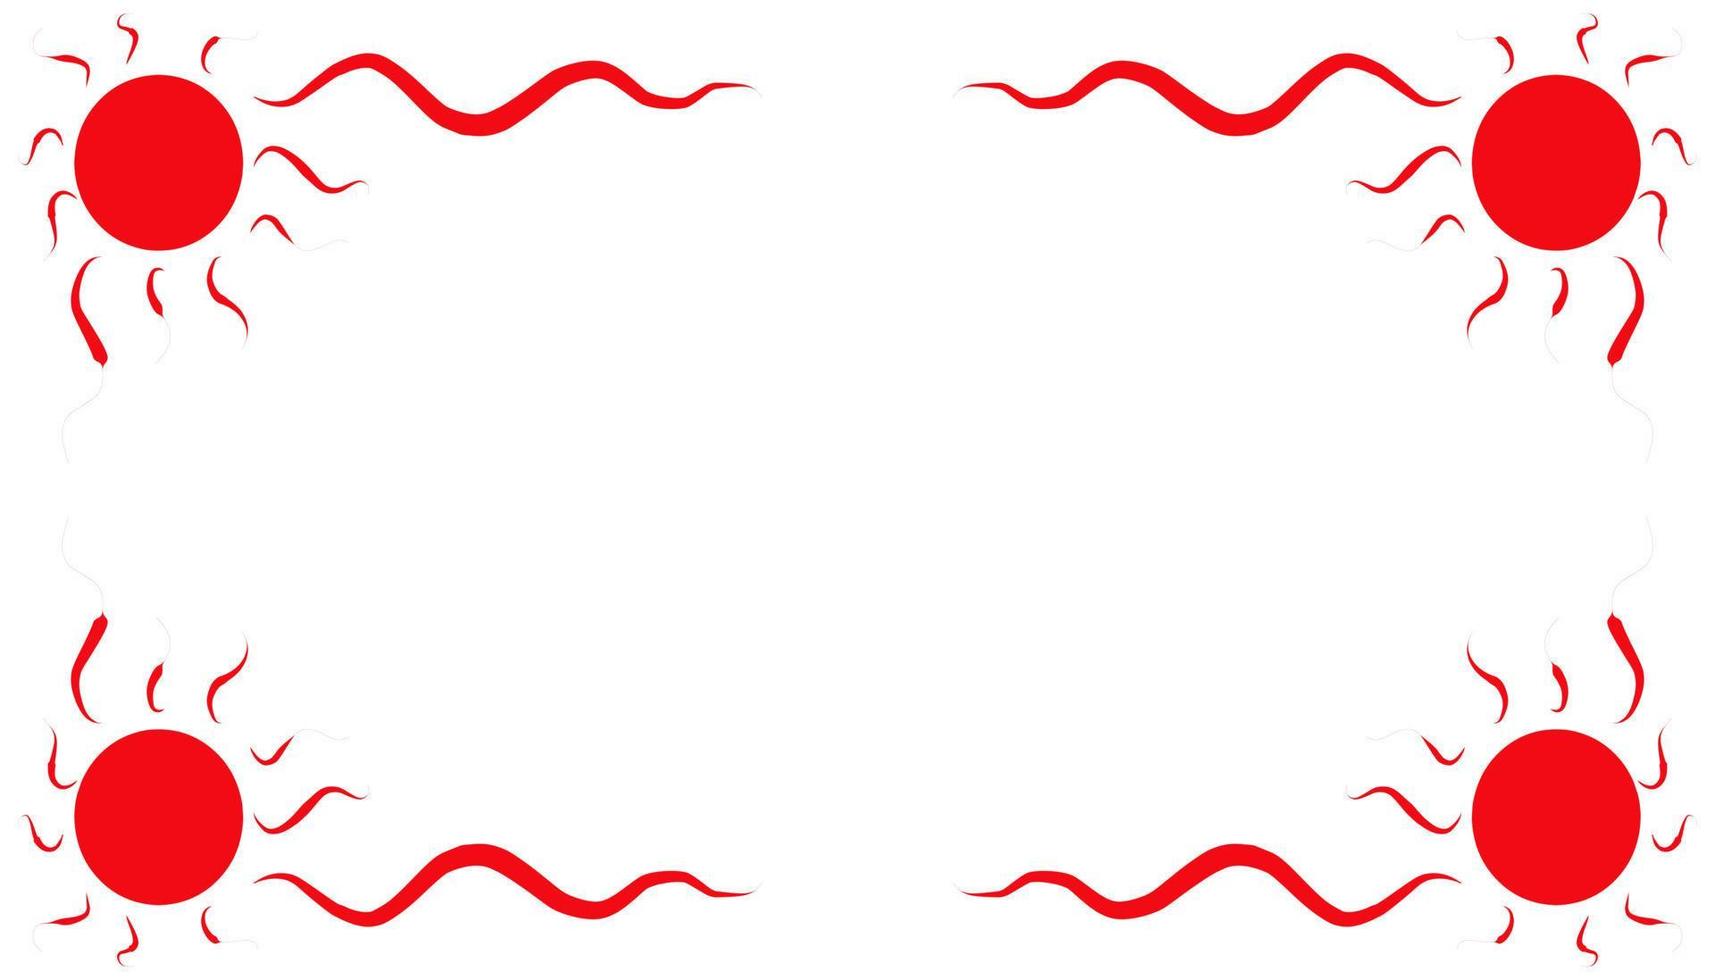 abstrakter hintergrund mit einem roten rahmen vektor